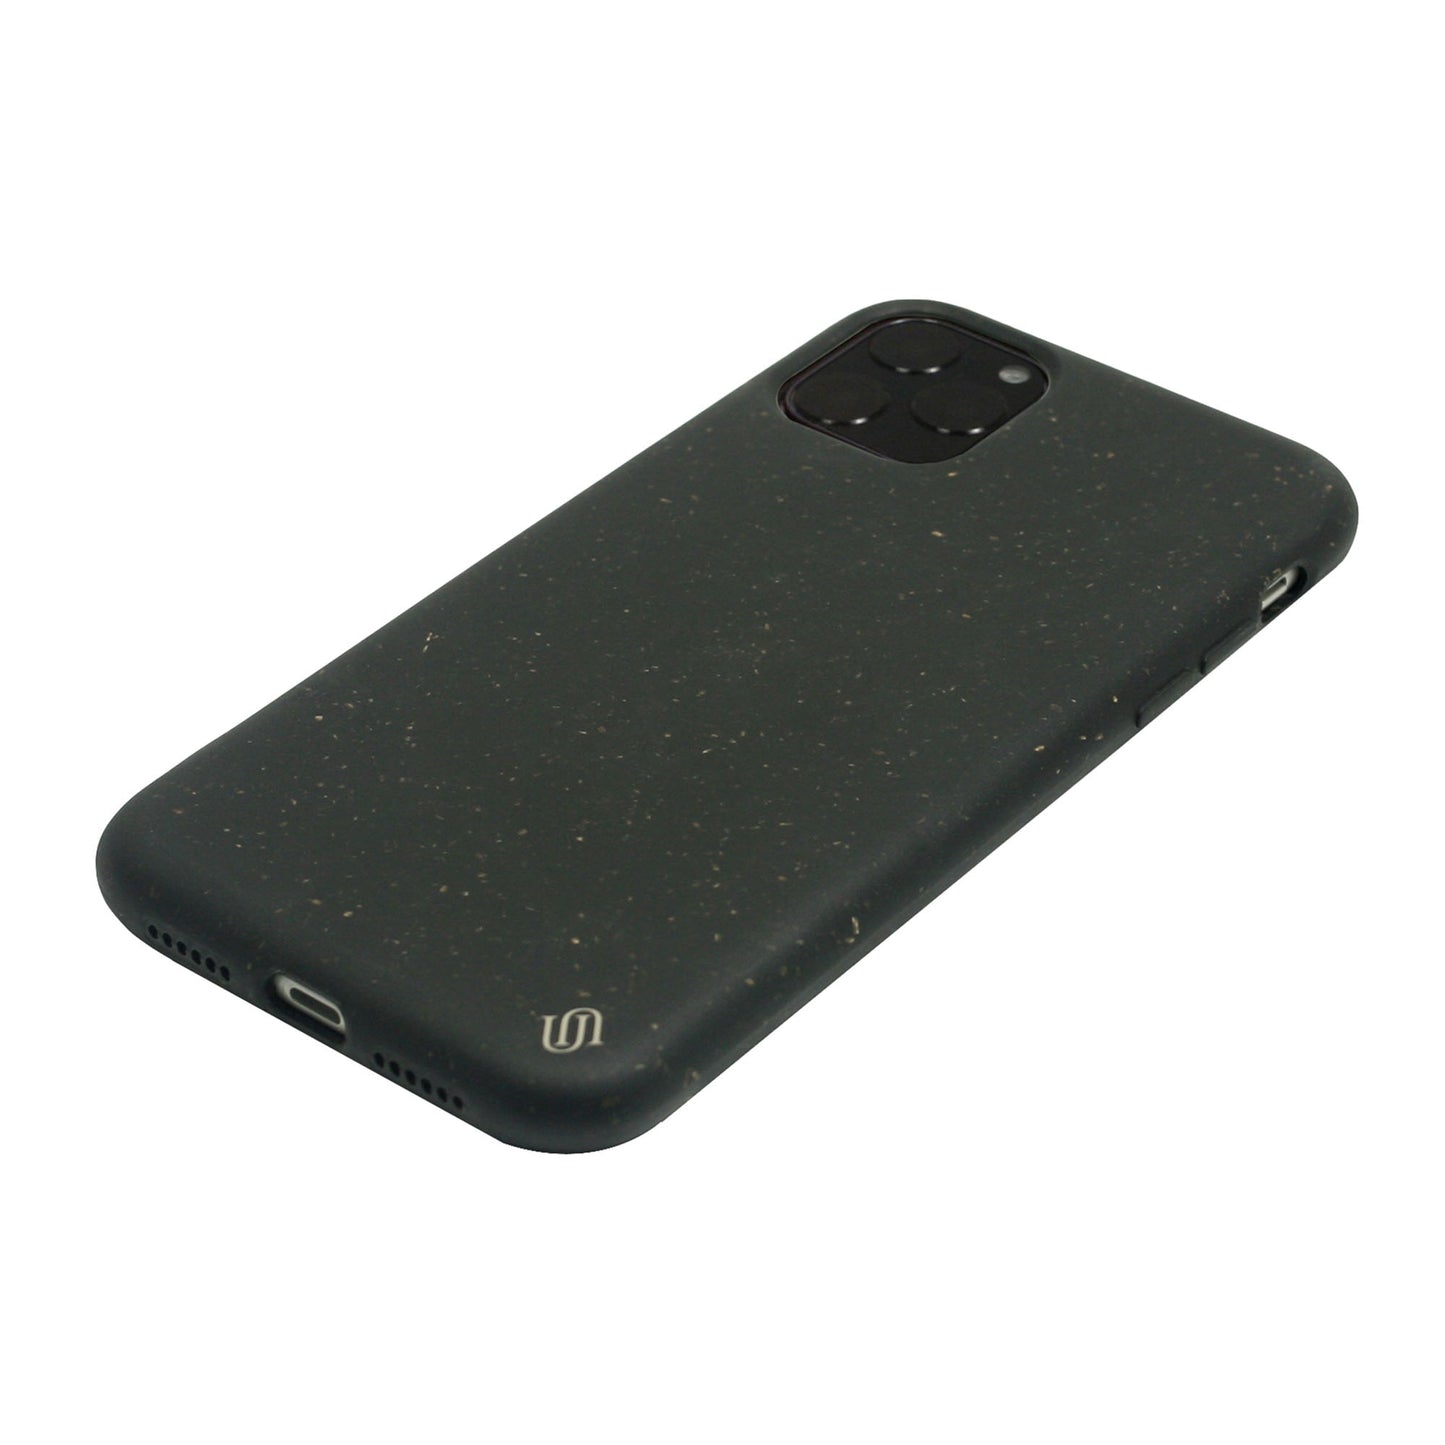 iPhone 11 Pro Max Uunique Black (Black Olive) Nutrisiti Eco Back Case - 15-05028